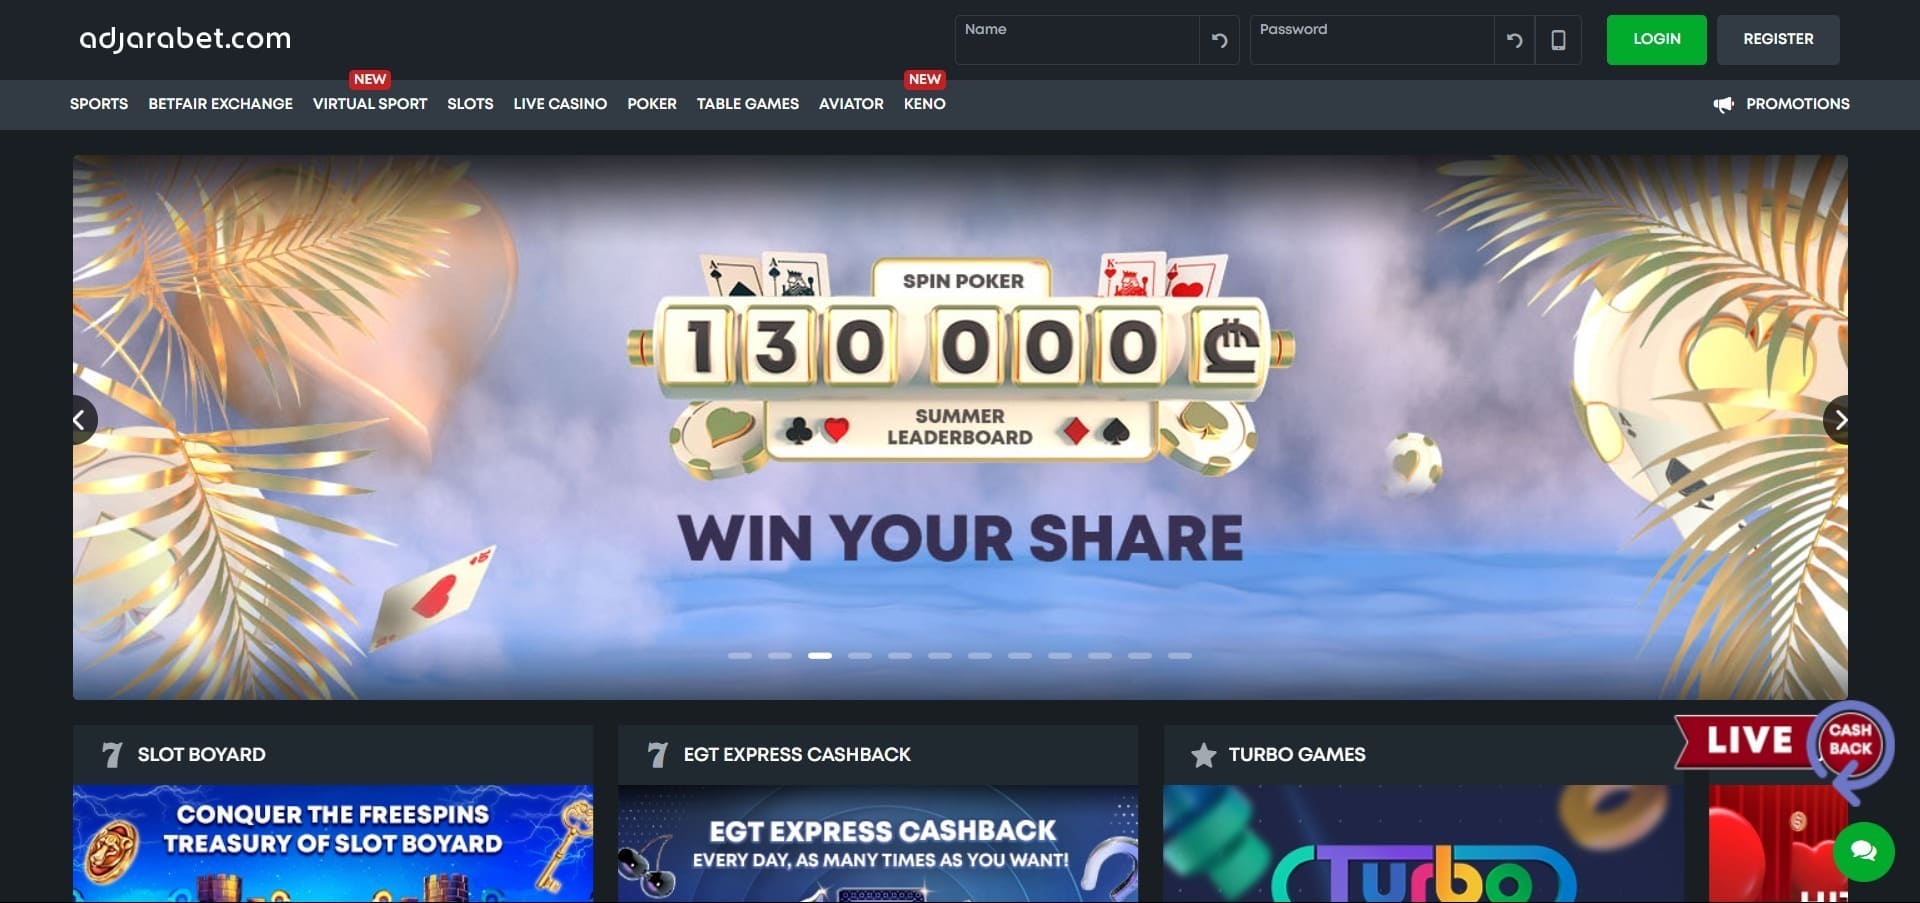 Adjarabet Casino'nun resmi web sitesi